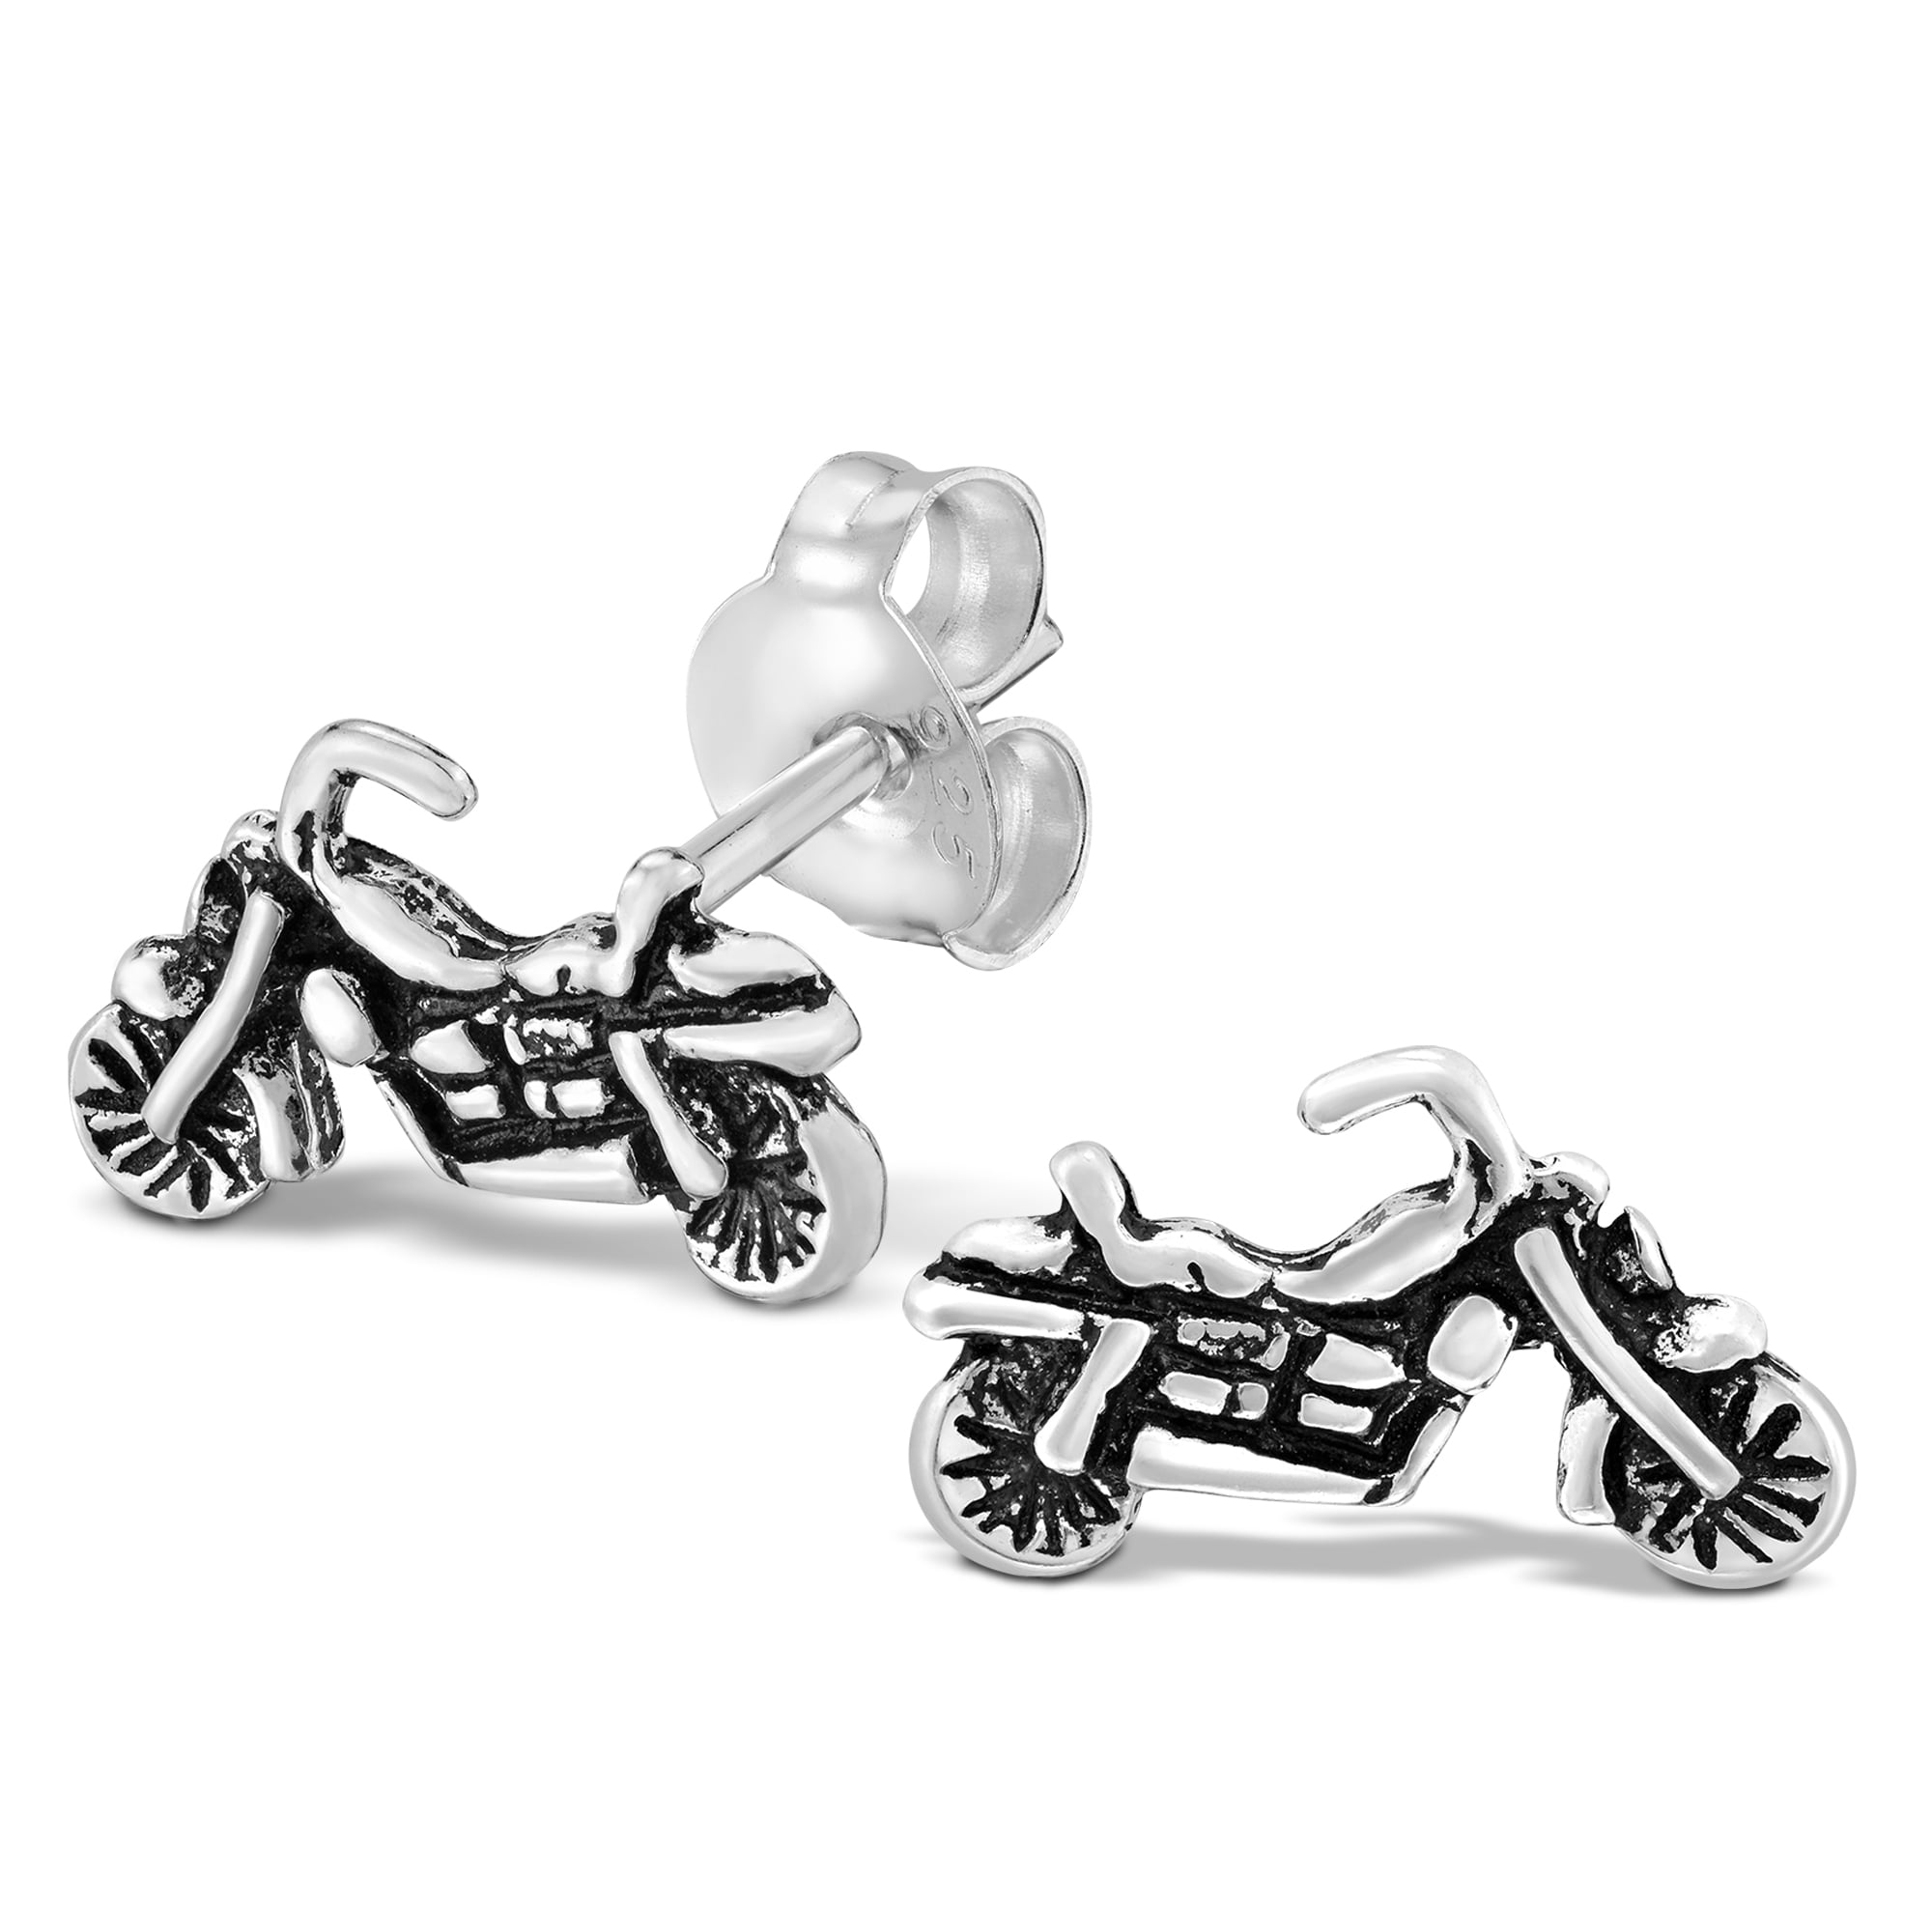 biker earrings polymer clay earrings polymer earrings biker jewelry polymer earrings Cool motorcycle earrings for bikergirls